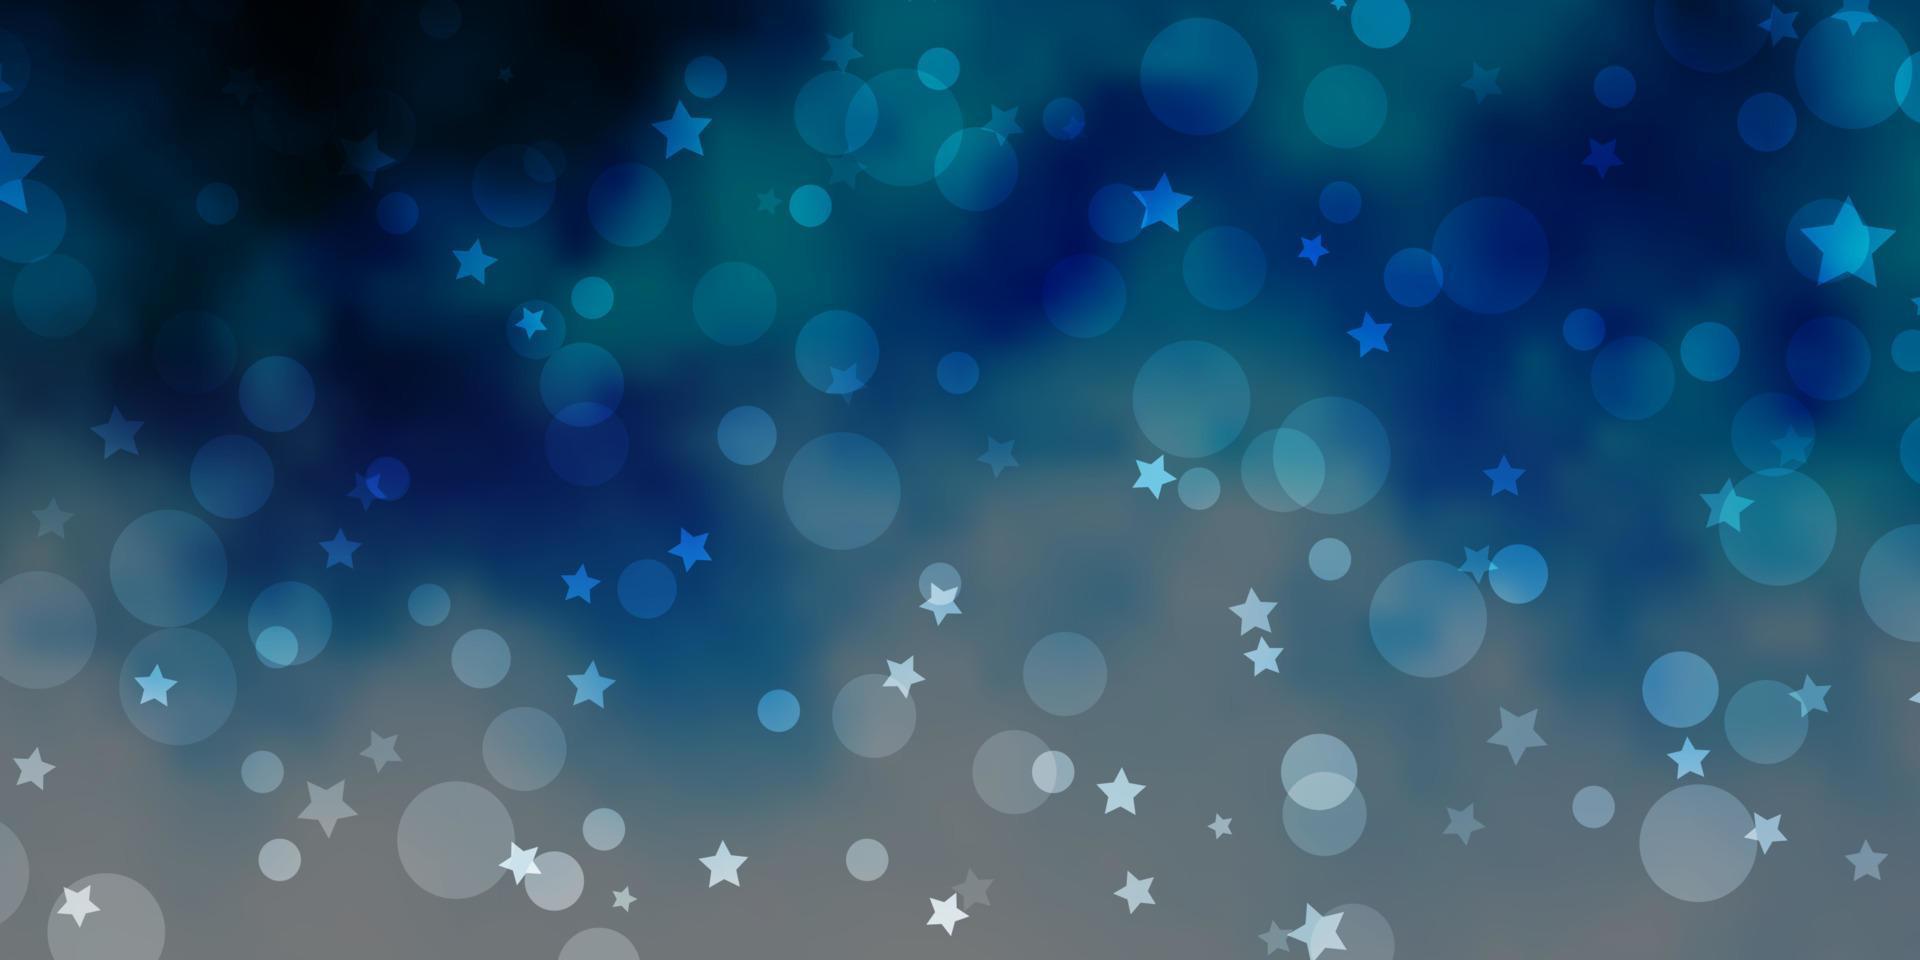 modèle vectoriel bleu clair avec des cercles, des étoiles.